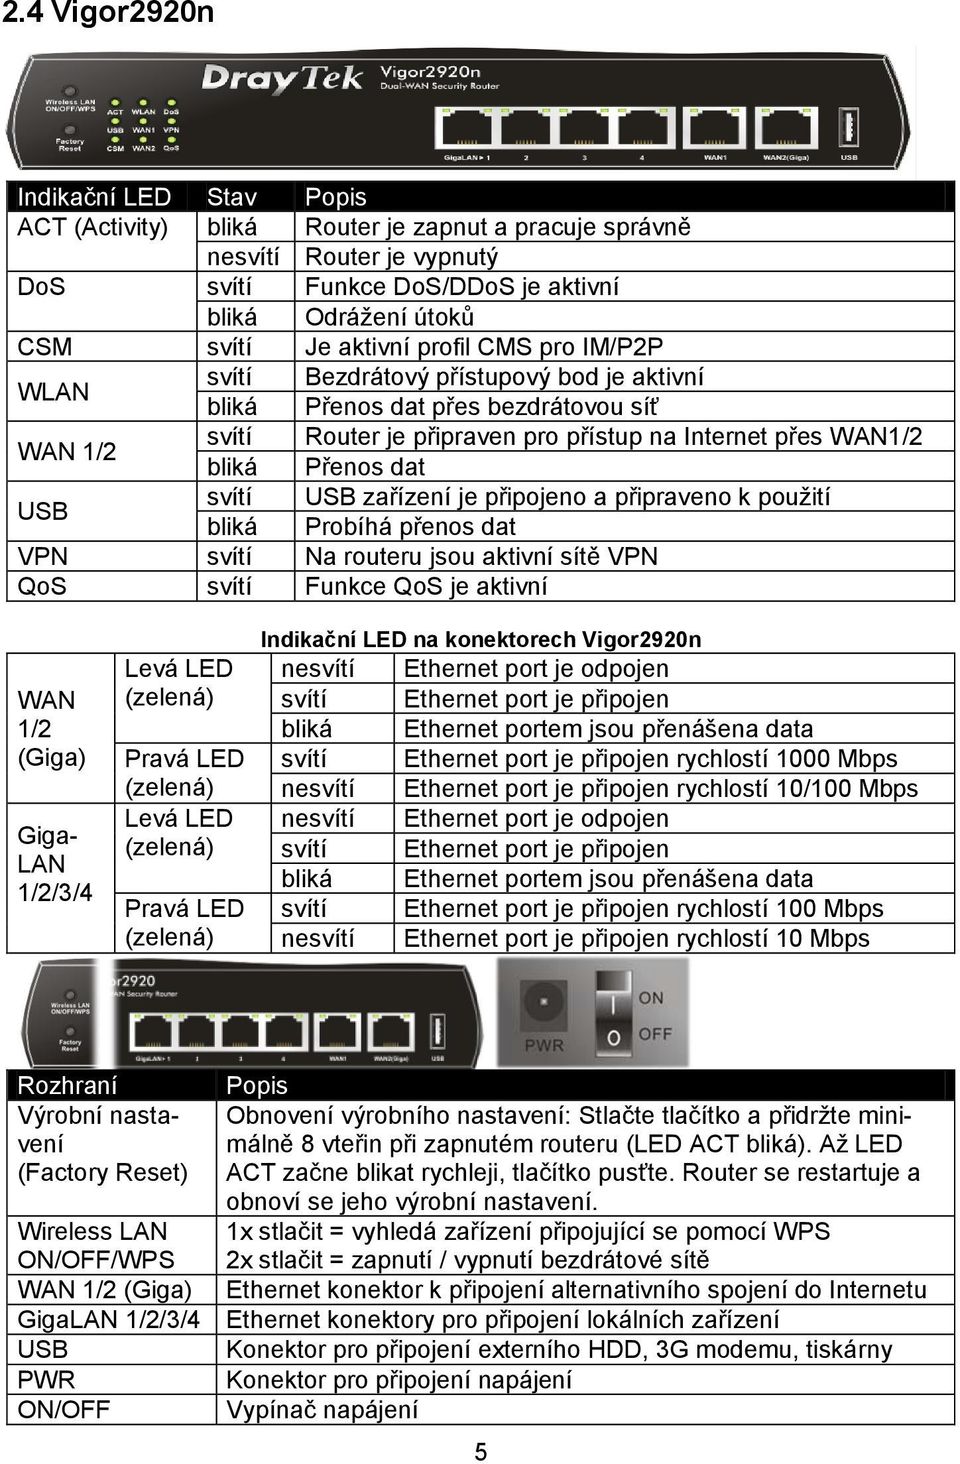 dat USB svítí USB zařízení je připojeno a připraveno k použití bliká Probíhá přenos dat VPN svítí Na routeru jsou aktivní sítě VPN QoS svítí Funkce QoS je aktivní WAN 1/2 (Giga) Giga- LAN 1/2/3/4